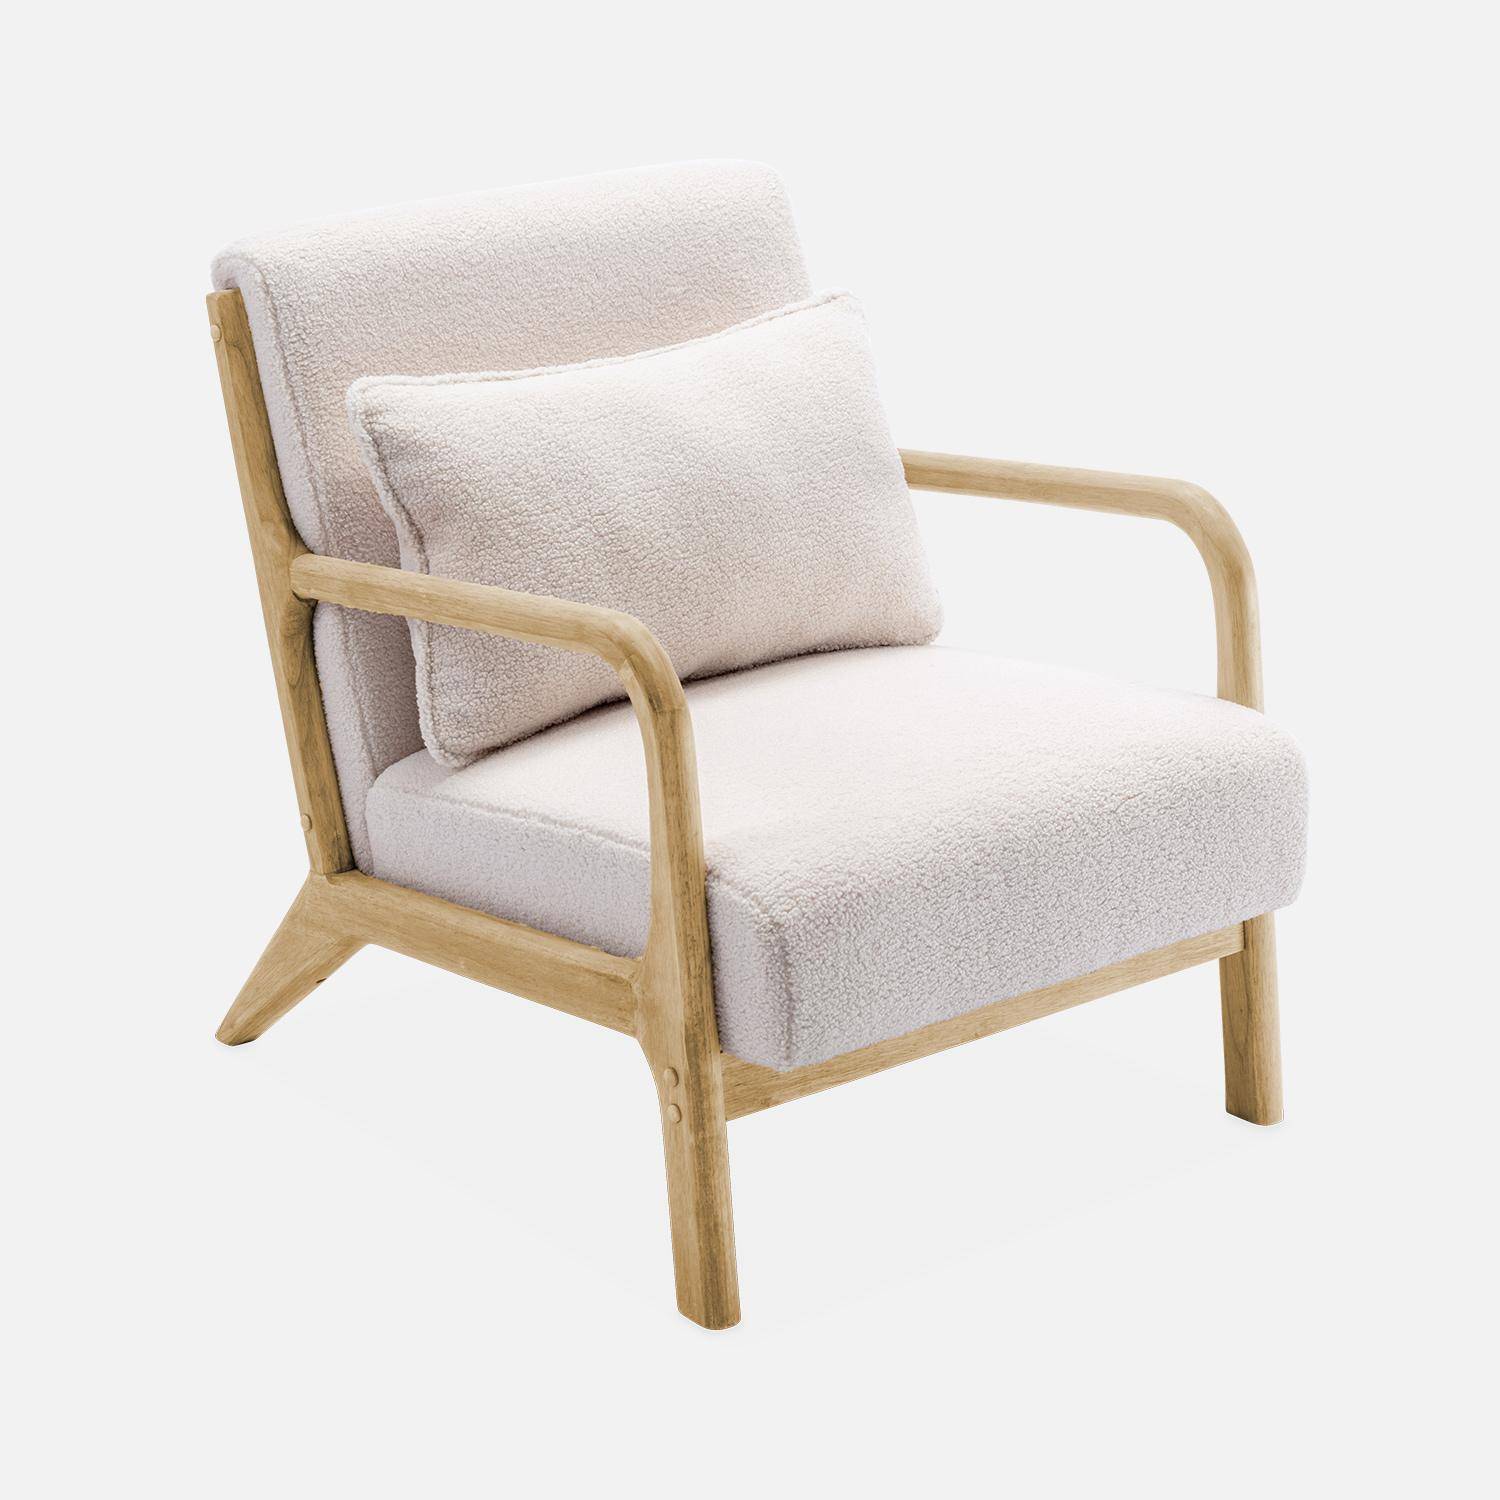 Weißer Sessel, Holz und Stoff, 1-Sitz, skandinavischer Stil, solides Holzgestell, bequeme Sitzfläche Photo4